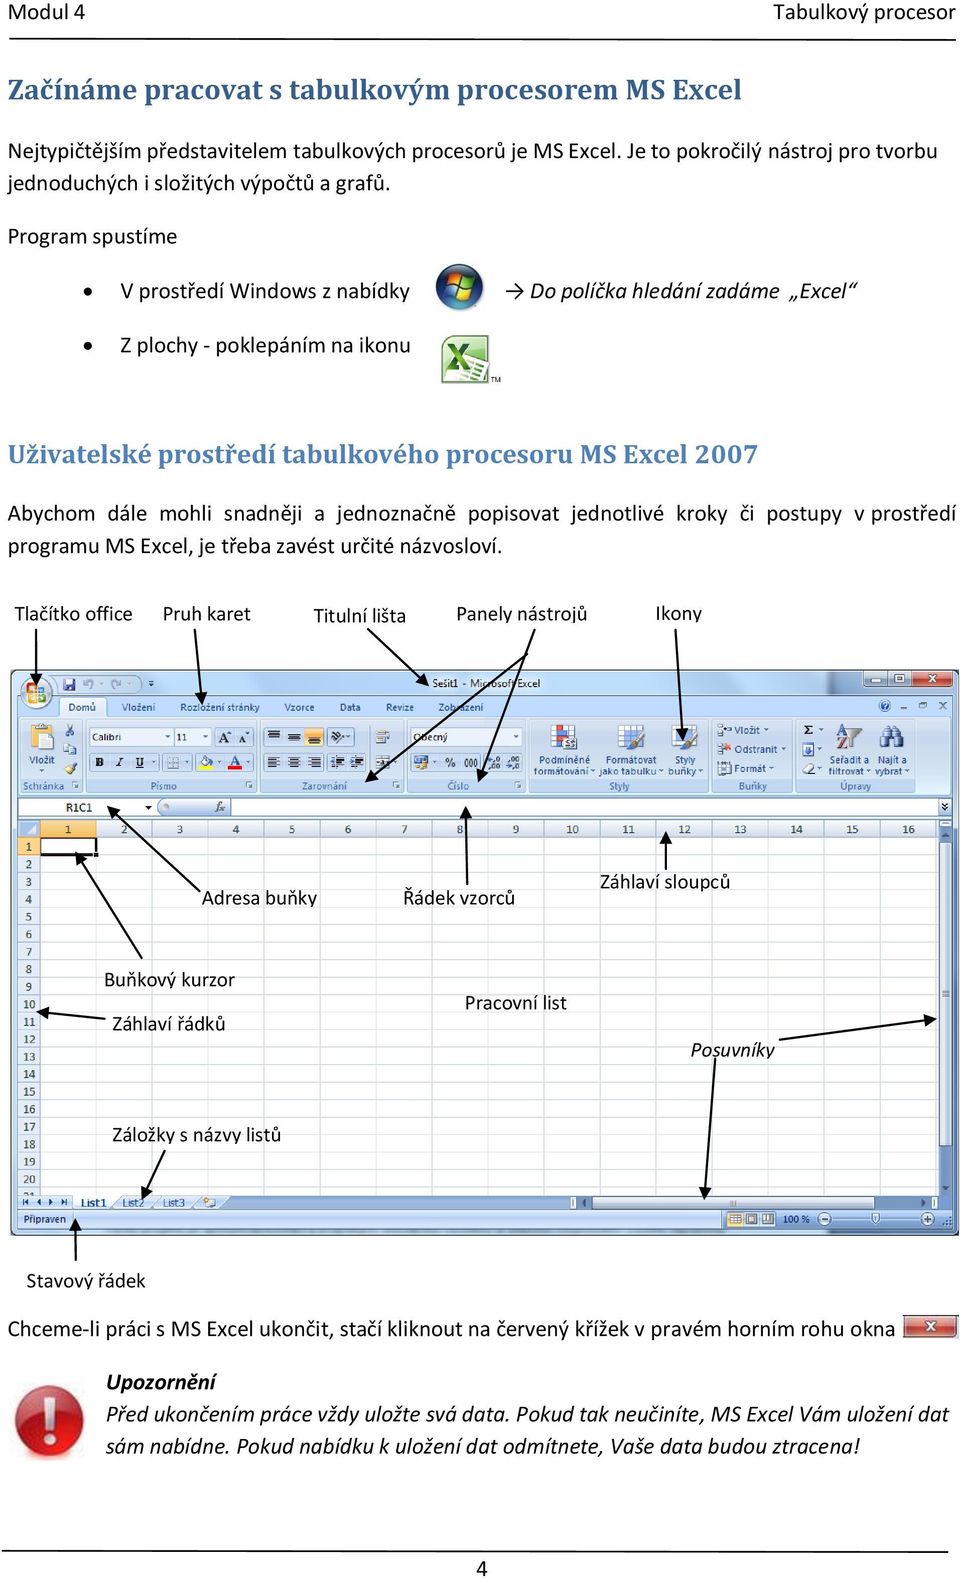 jednoznačně popisovat jednotlivé kroky či postupy v prostředí programu MS Excel, je třeba zavést určité názvosloví.